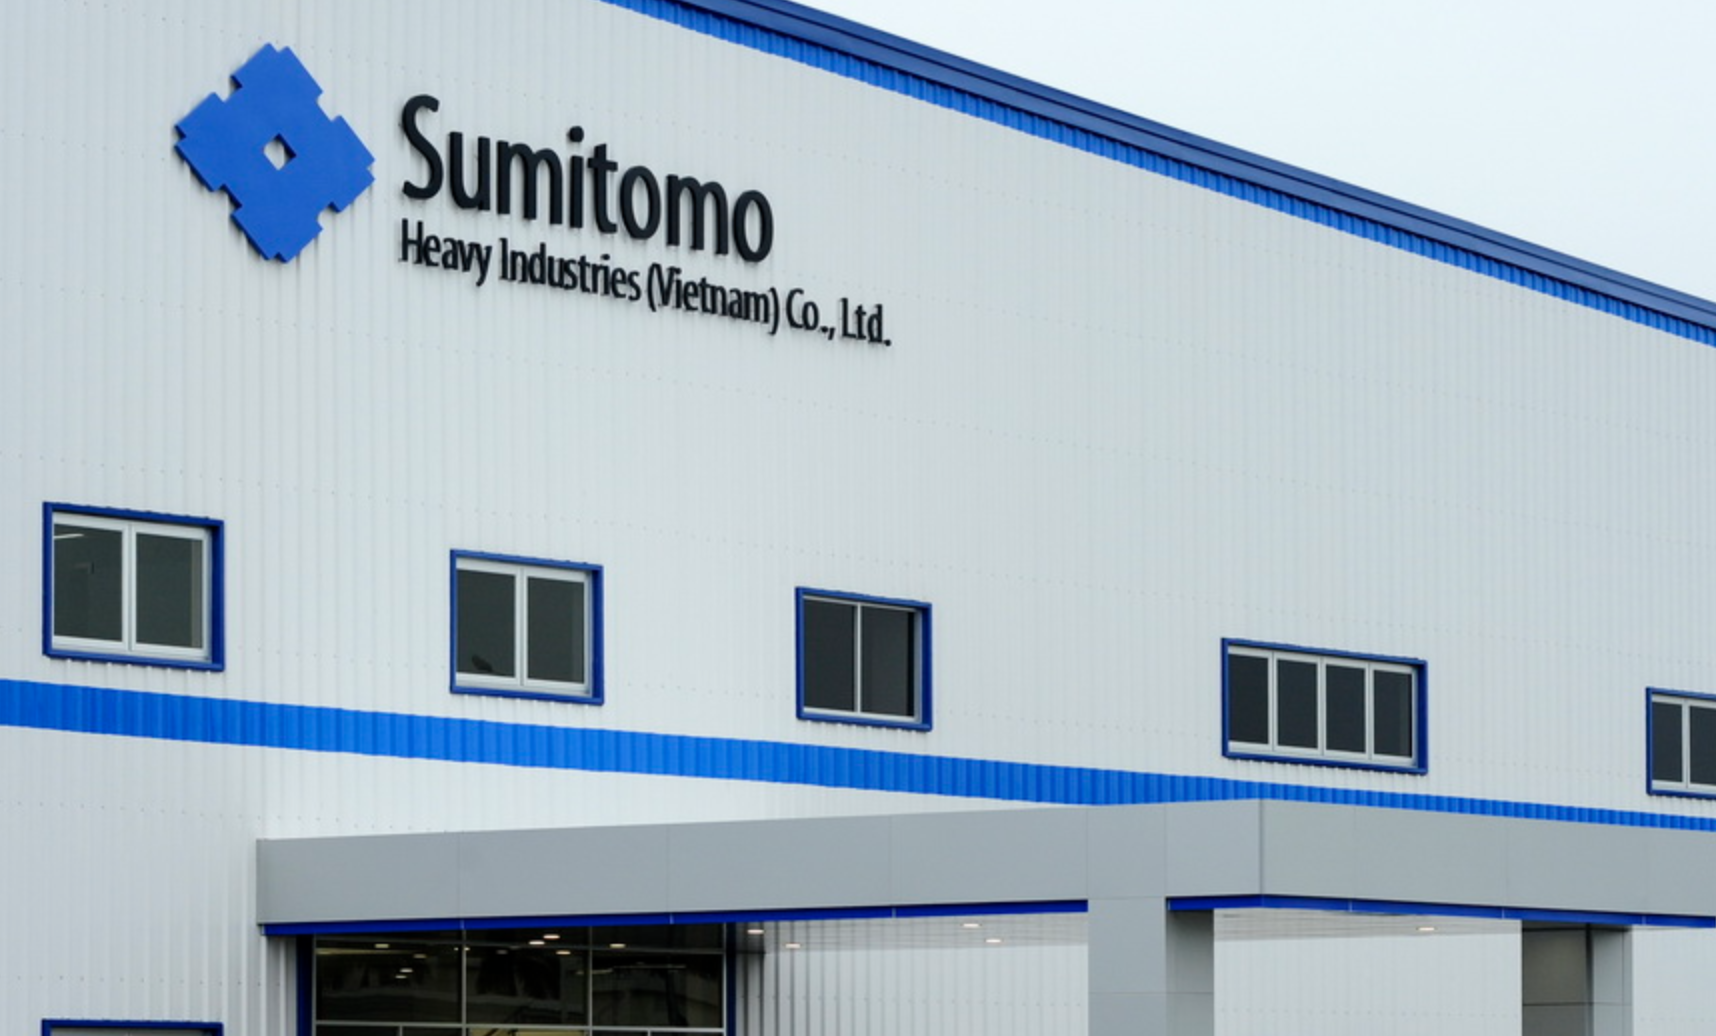 Hơn một năm xảy ra 3 vụ tai nạn lao động tại Công ty Sumitomo Heavy Industries Việt Nam